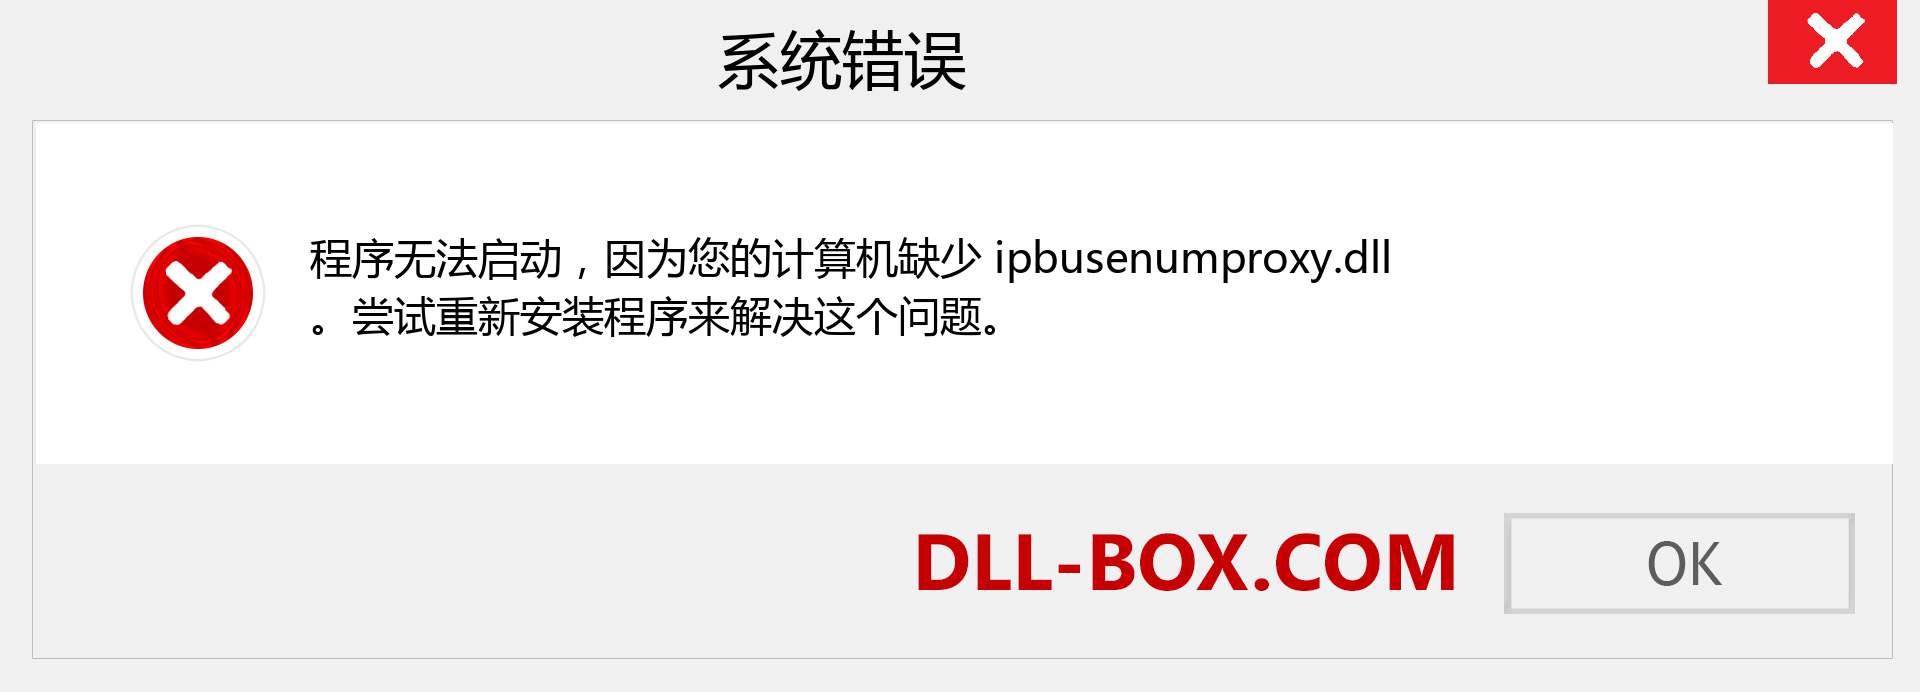 ipbusenumproxy.dll 文件丢失？。 适用于 Windows 7、8、10 的下载 - 修复 Windows、照片、图像上的 ipbusenumproxy dll 丢失错误